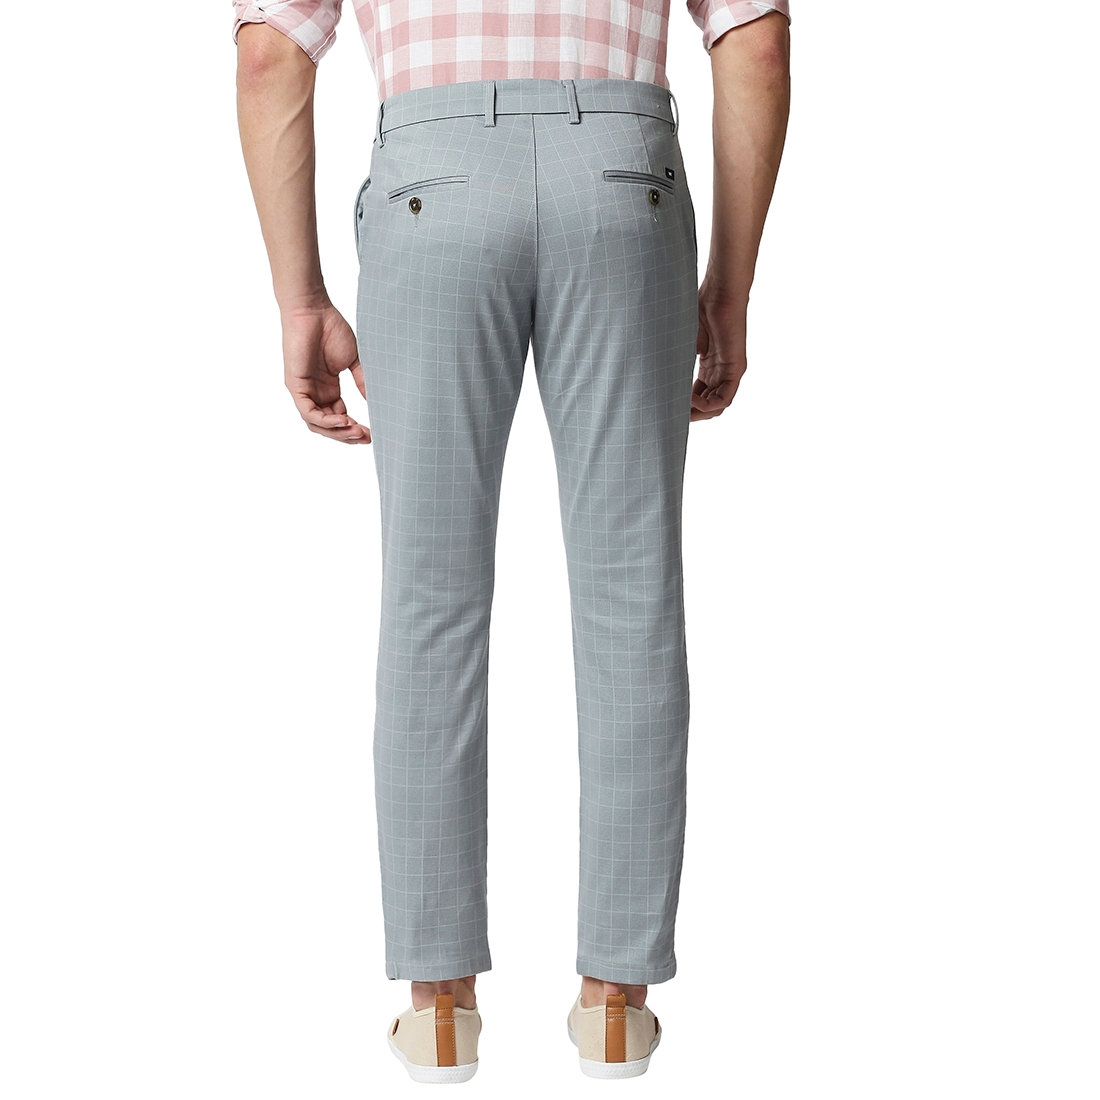 Basics | Men's Light Blue Cotton Blend Checked Trouser 1